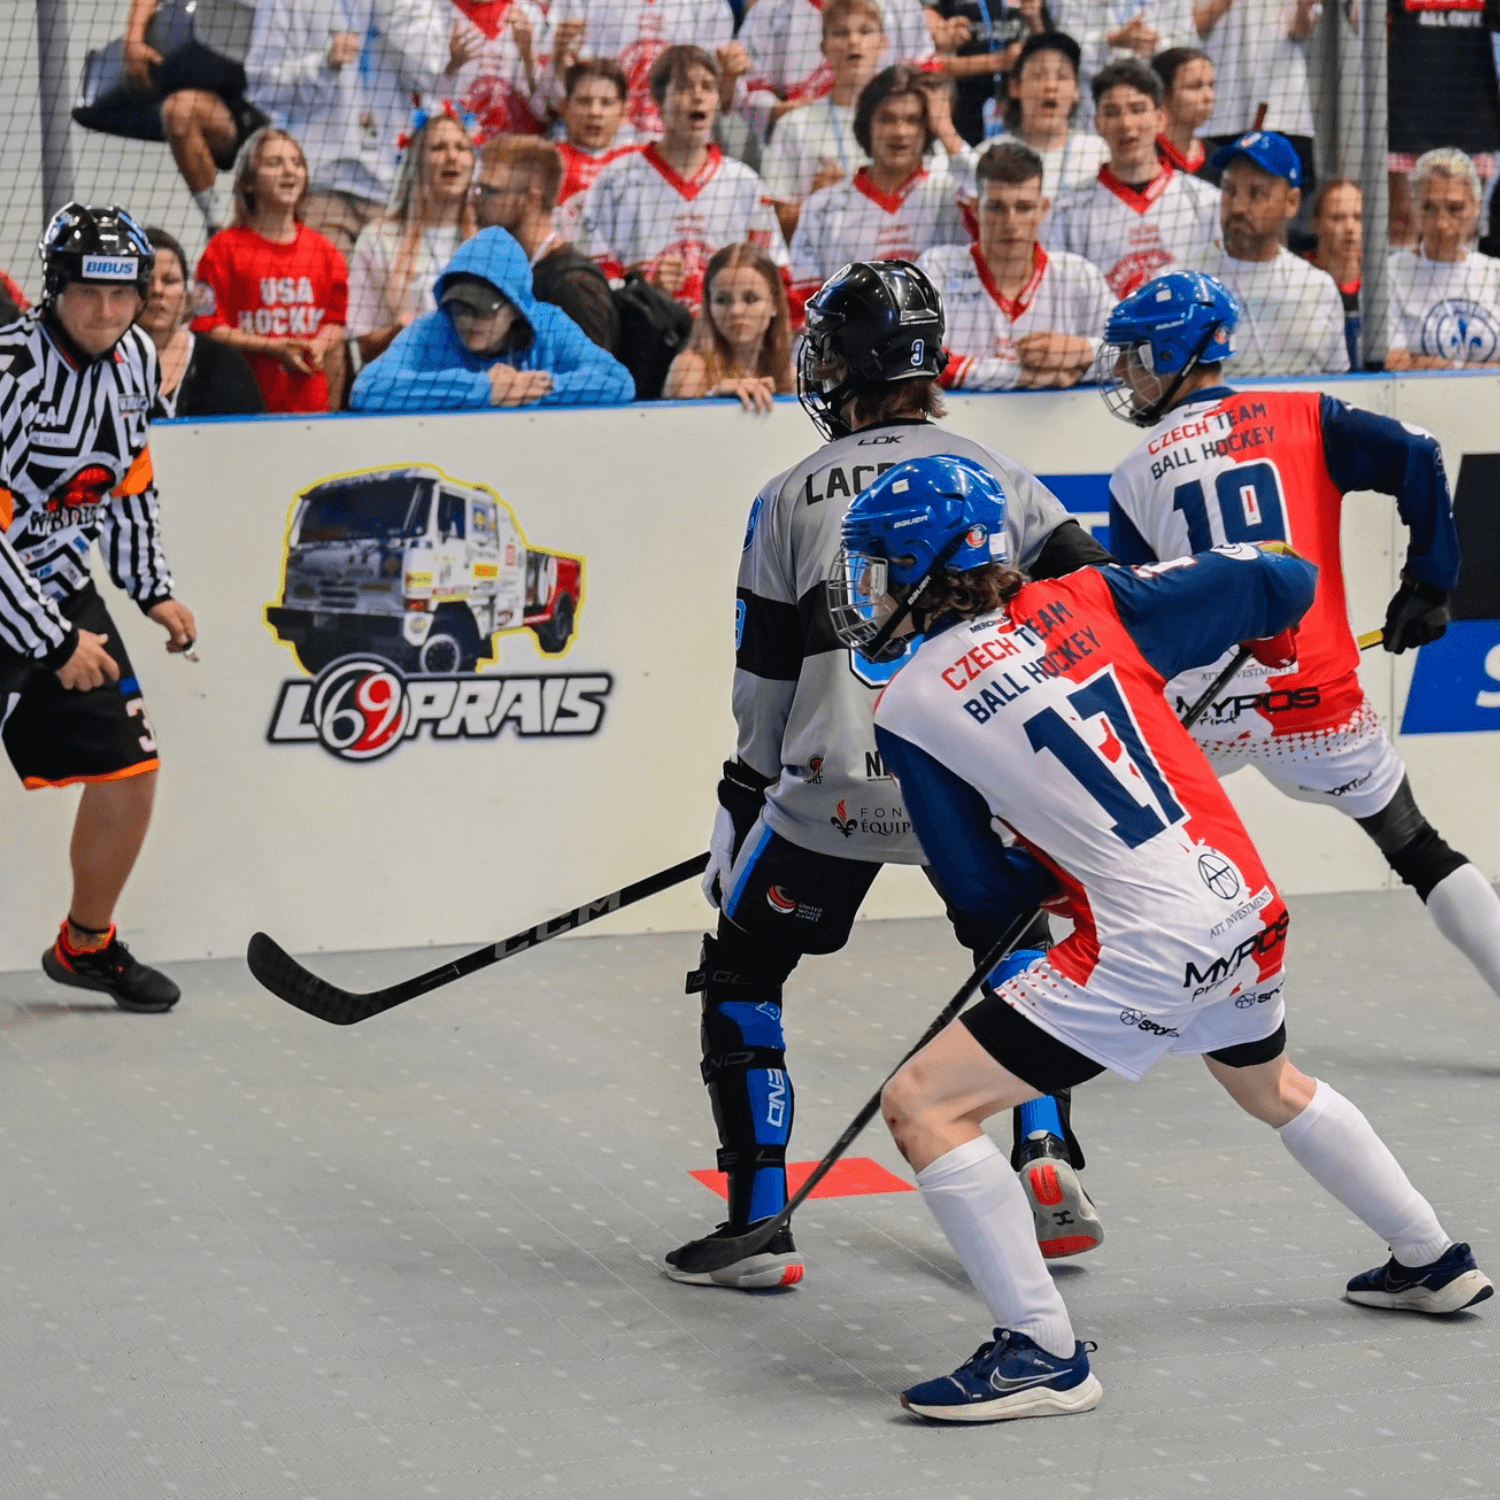 United World Games hockey balle équipe Québec Autriche